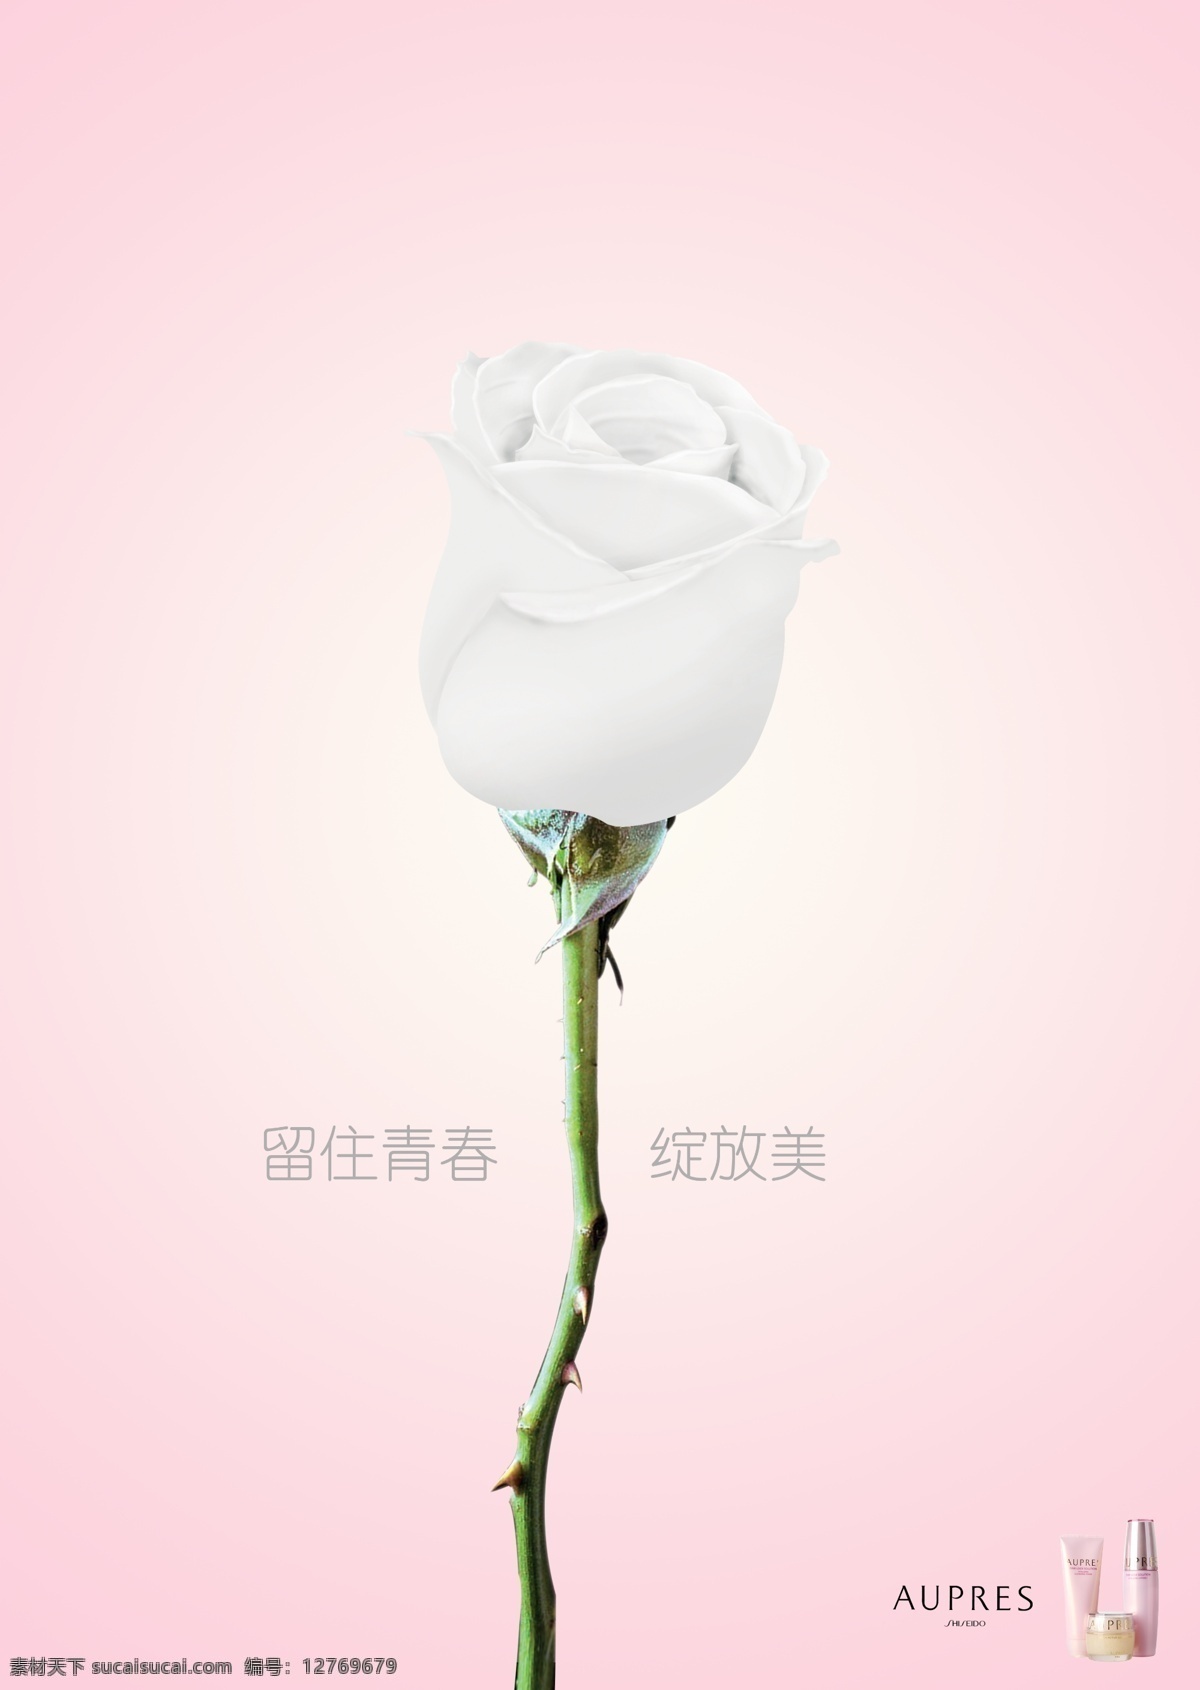 平面设计 化妆品 玫瑰花 粉色 小清新 唯美 女性 绽放 乳液 欧 泊 莱 玫瑰花设计 白色